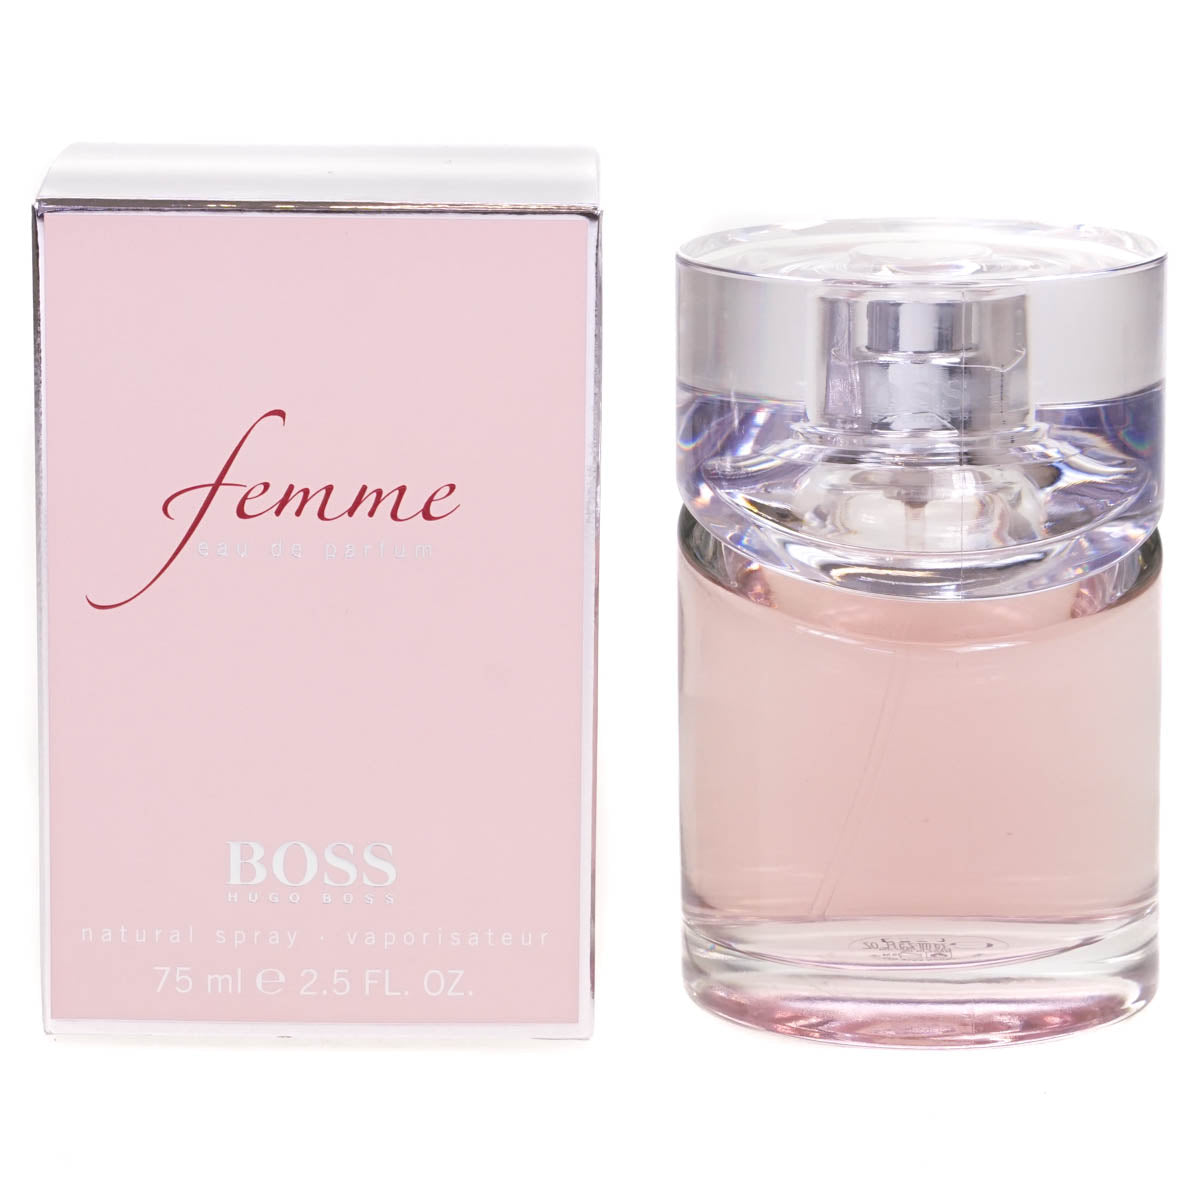 Hugo Boss Femme 75ml Eau De Parfum Spray